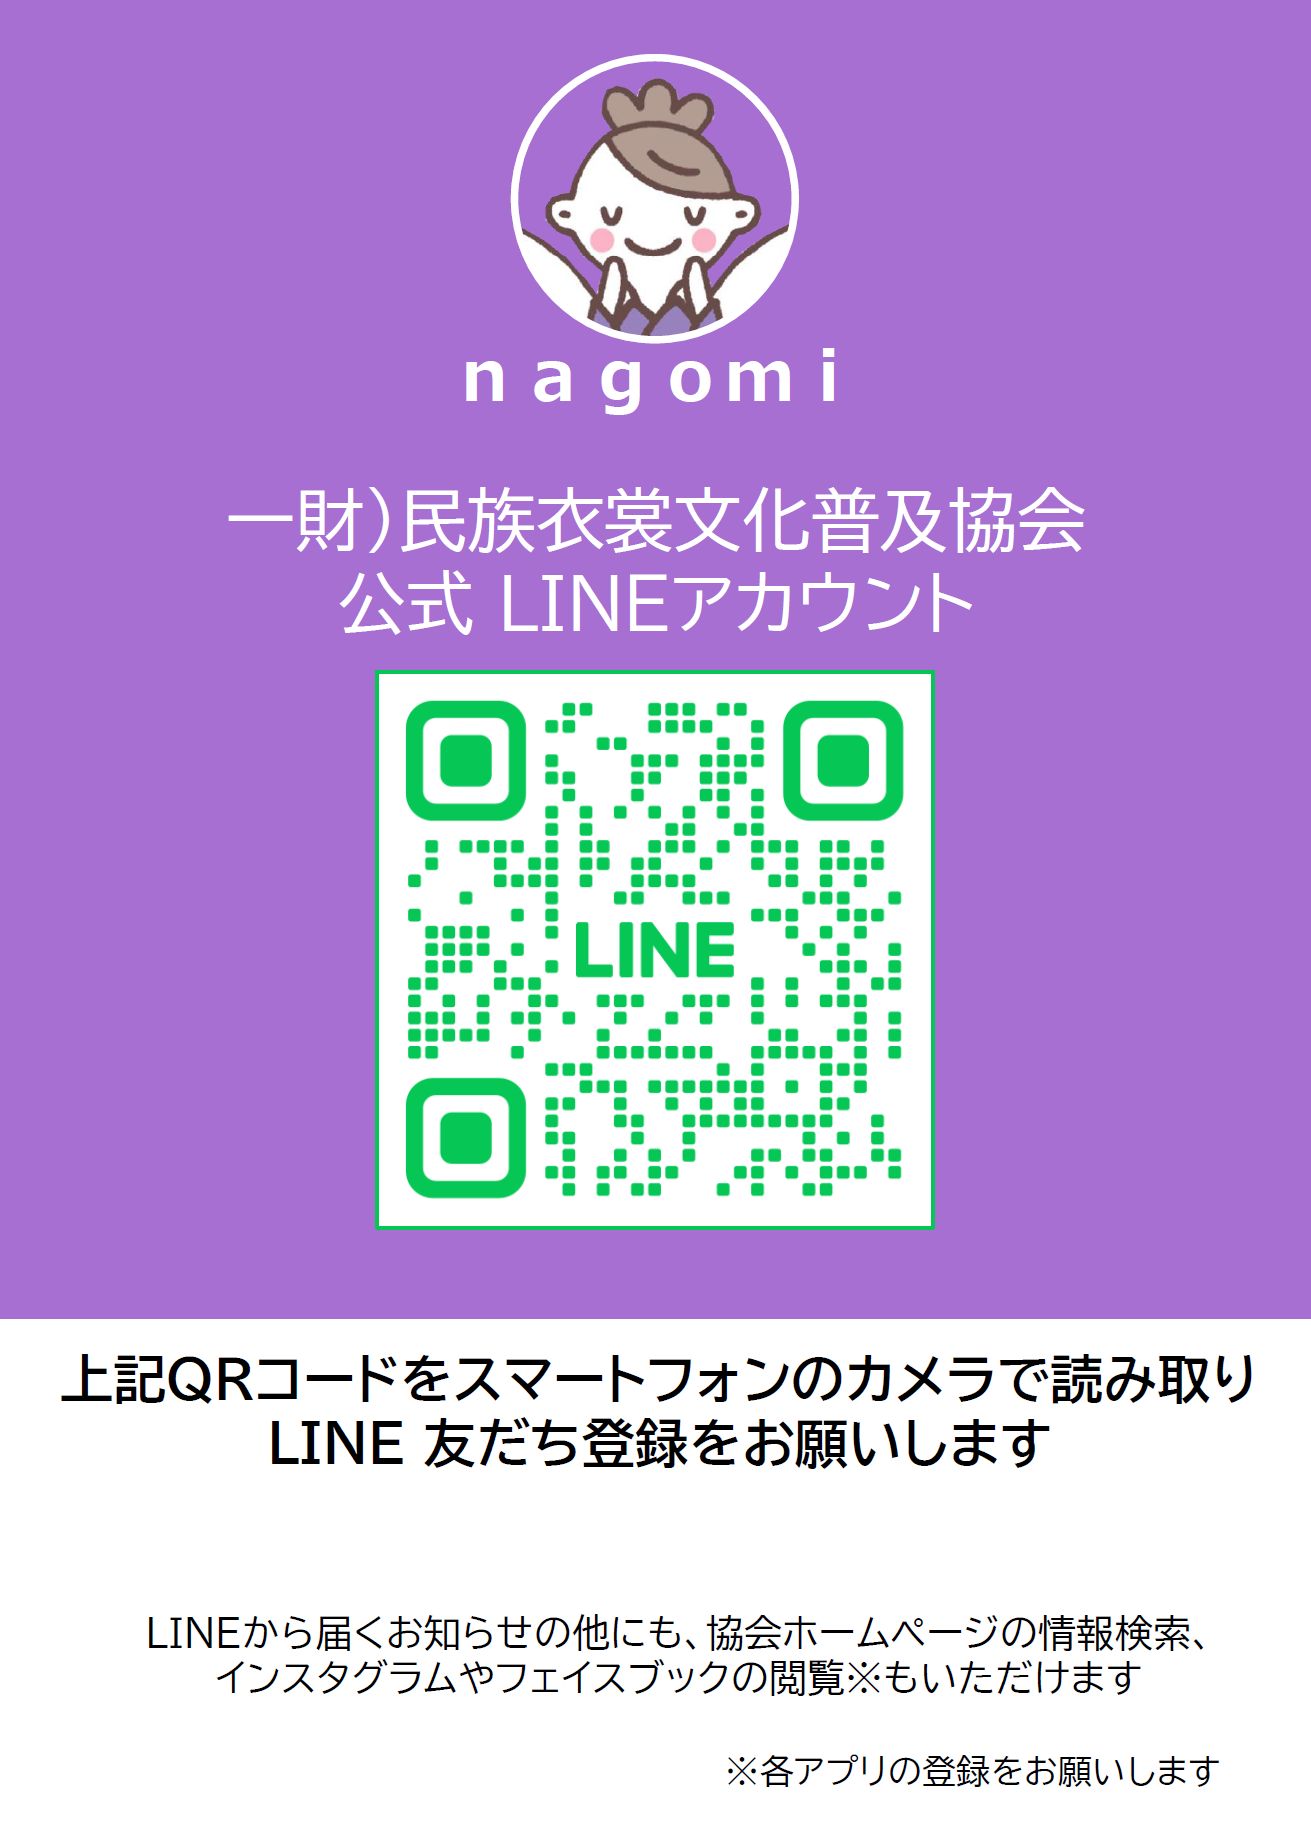 LINE＠公式アカウント「nagomi」開設！